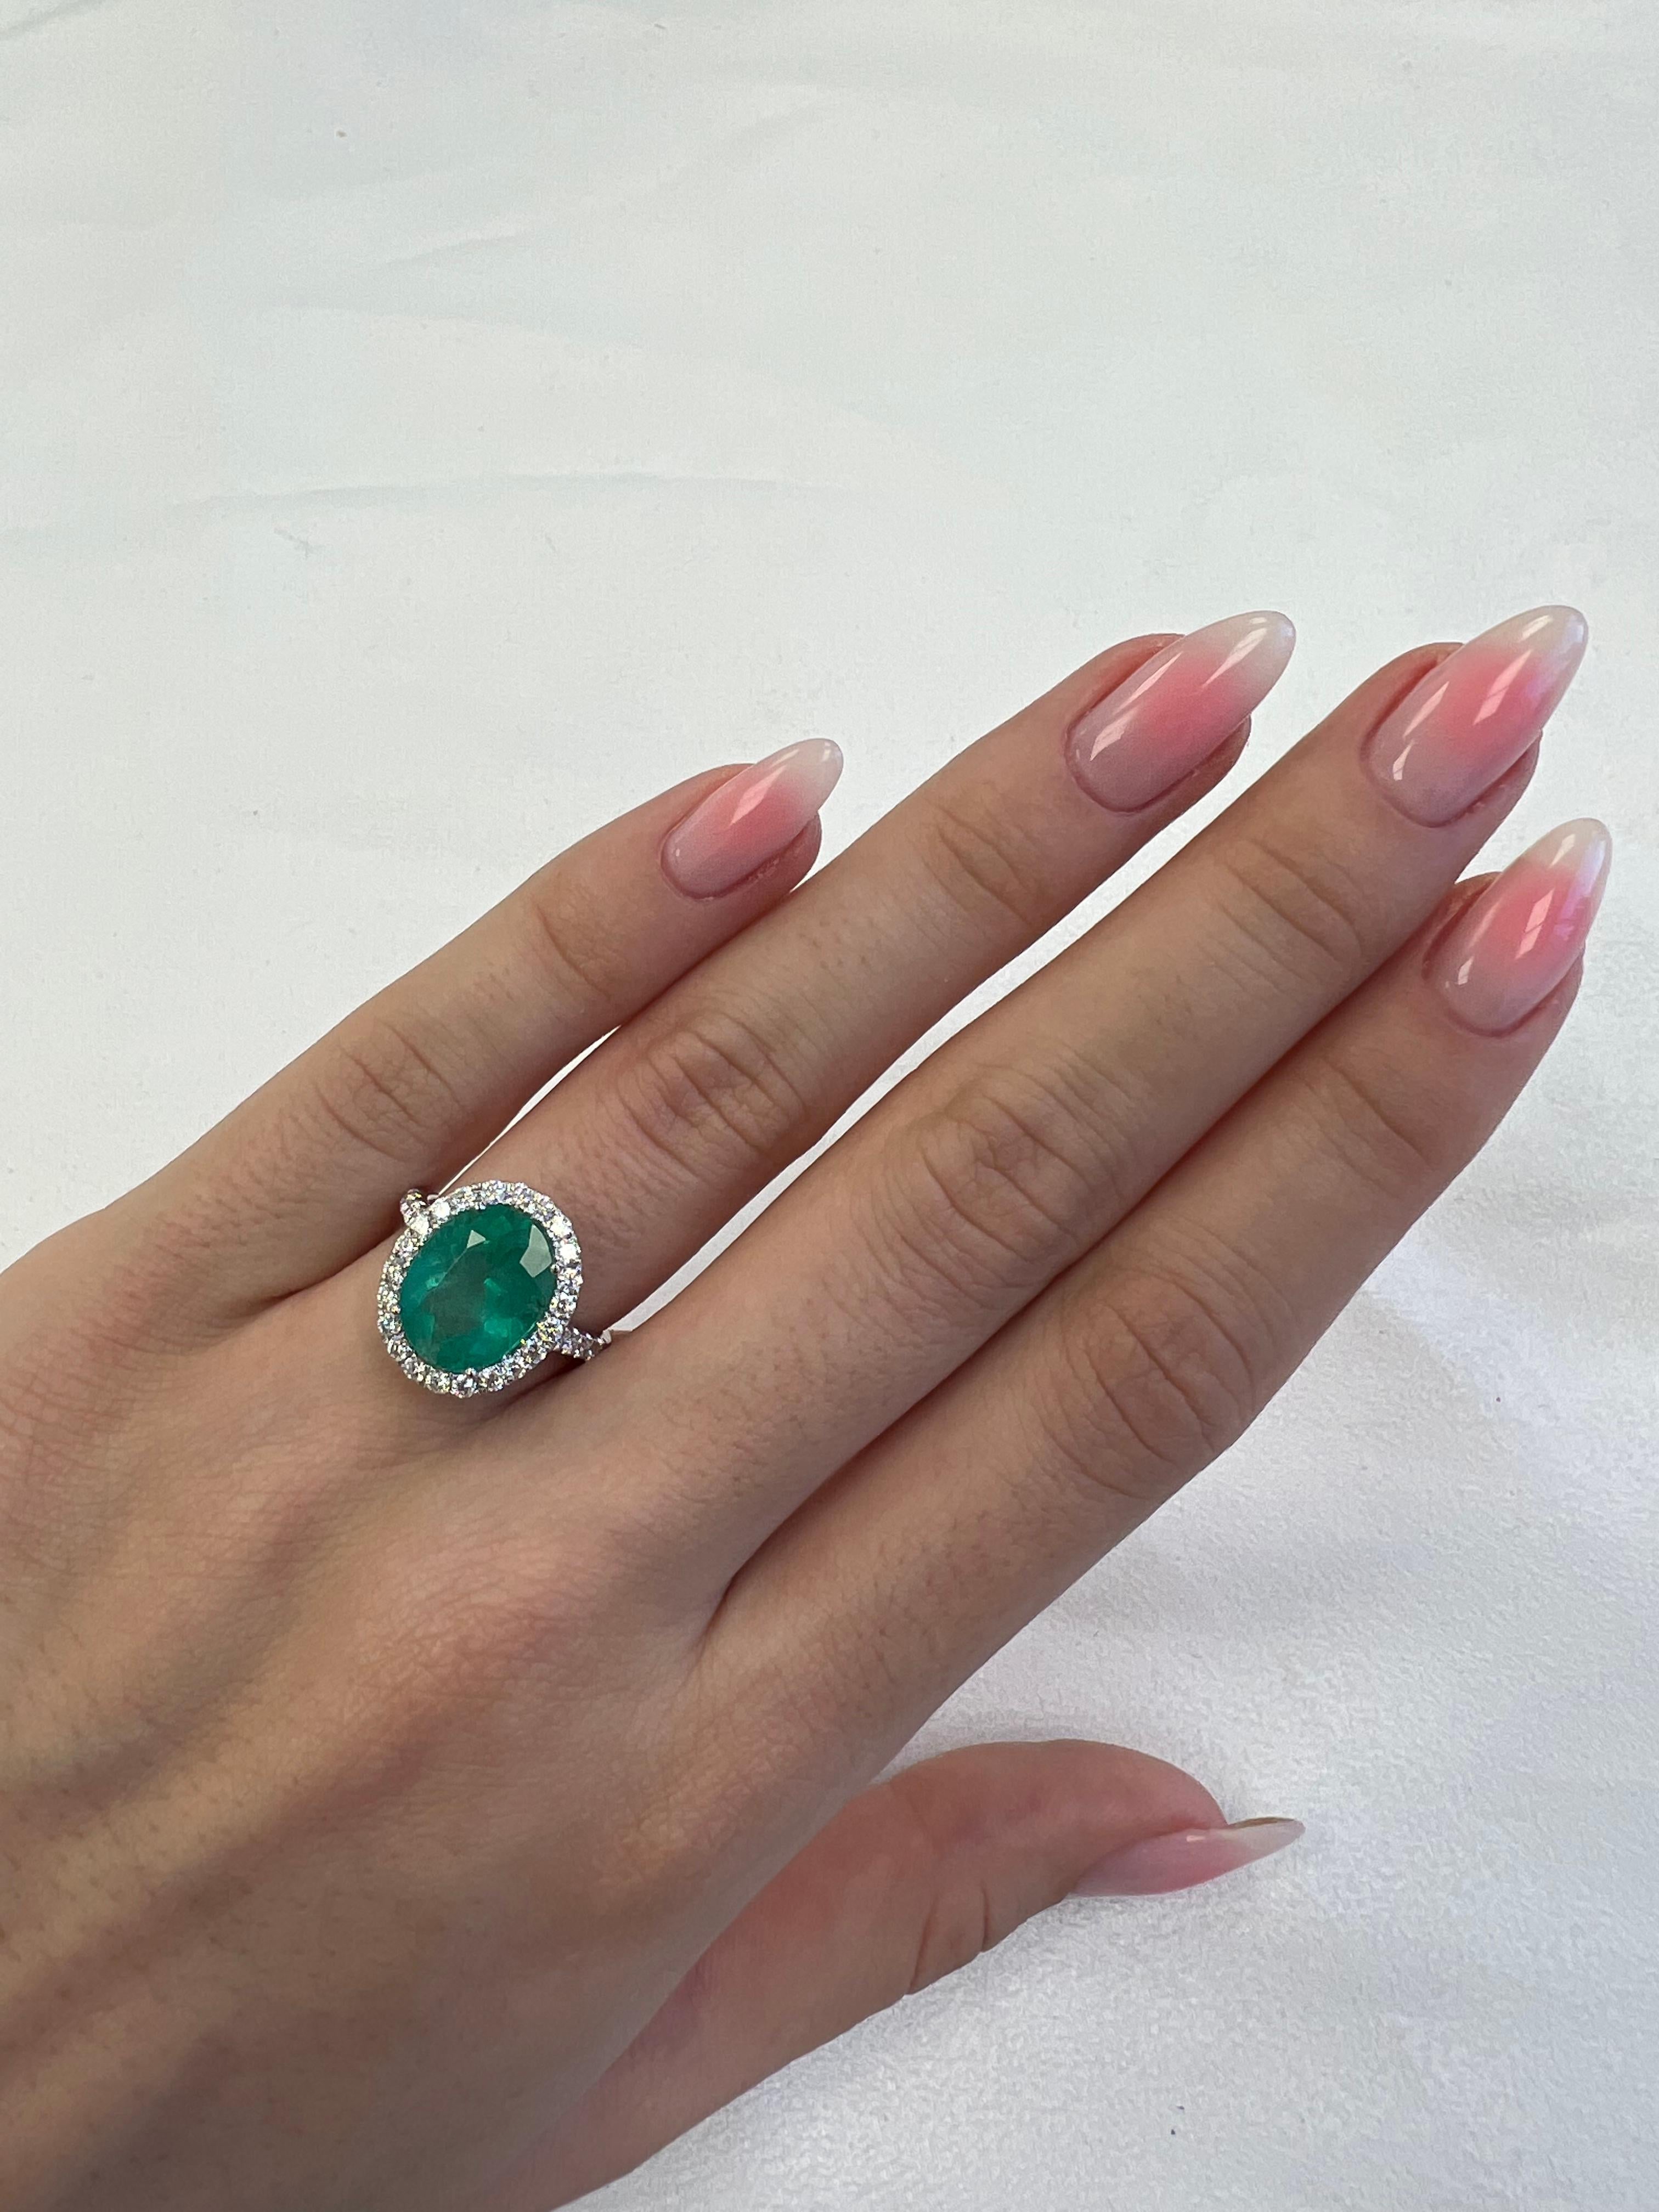 Klassischer Halo-Ring mit Smaragd und Diamant, GIA-zertifiziert. 
4.99 Karat Gesamtgewicht der Edelsteine.
4,17 Karat Smaragd in ovaler Form, F1, GIA zertifiziert. Ergänzt durch 34 runde Brillanten, 0,82 Karat, Farbe F/G und Reinheit VS. 18 Karat